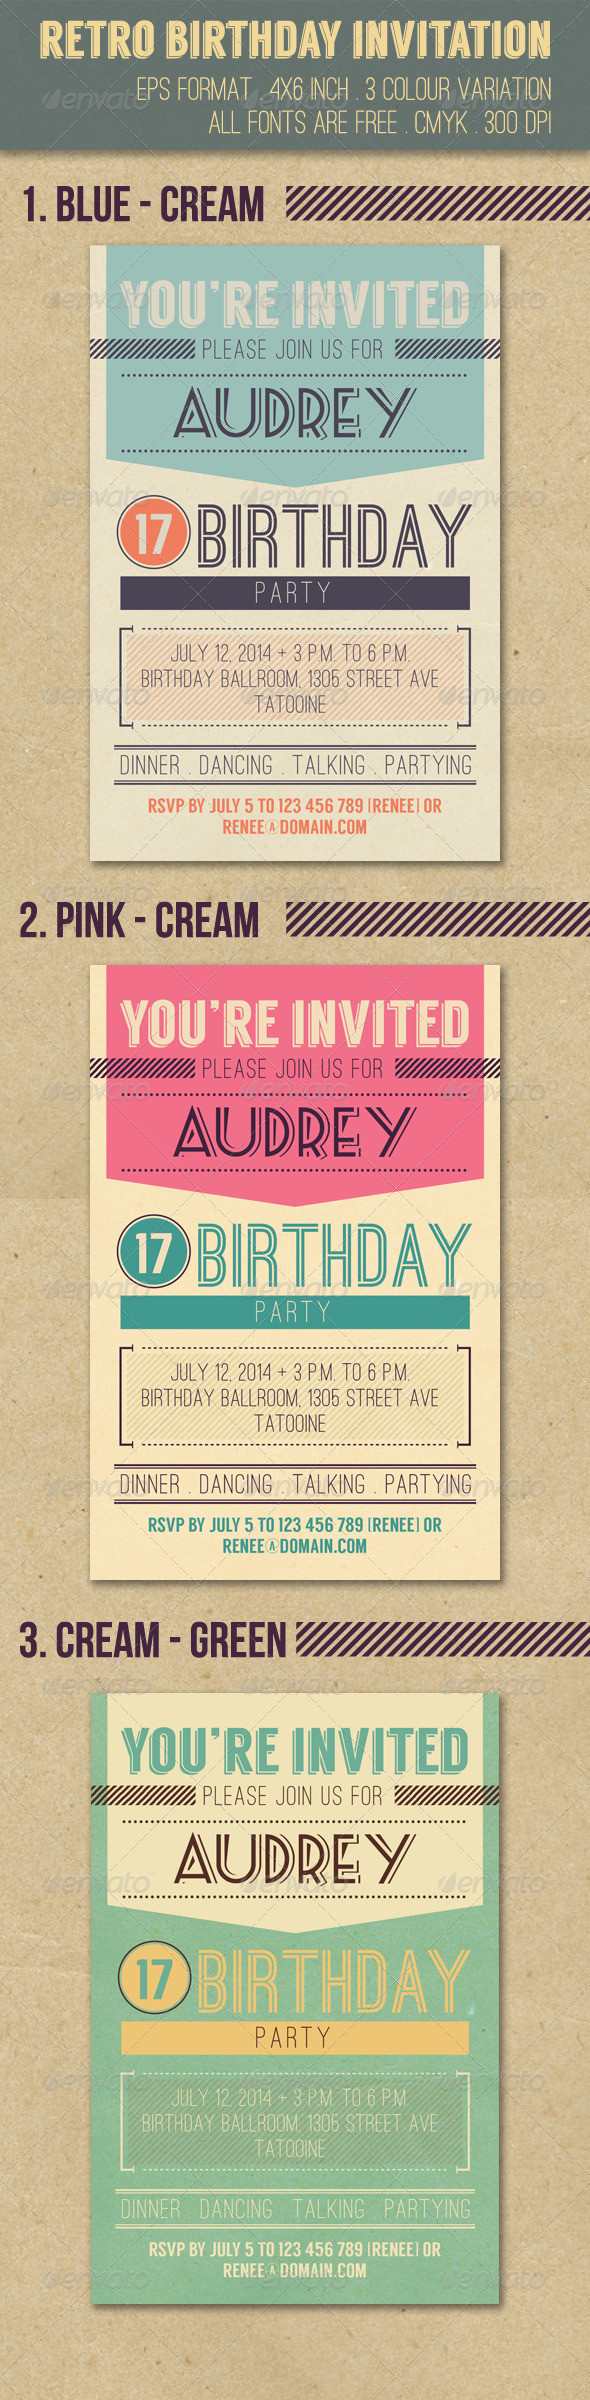 Retro Birthday Invitation by apriliapratama | GraphicRiver